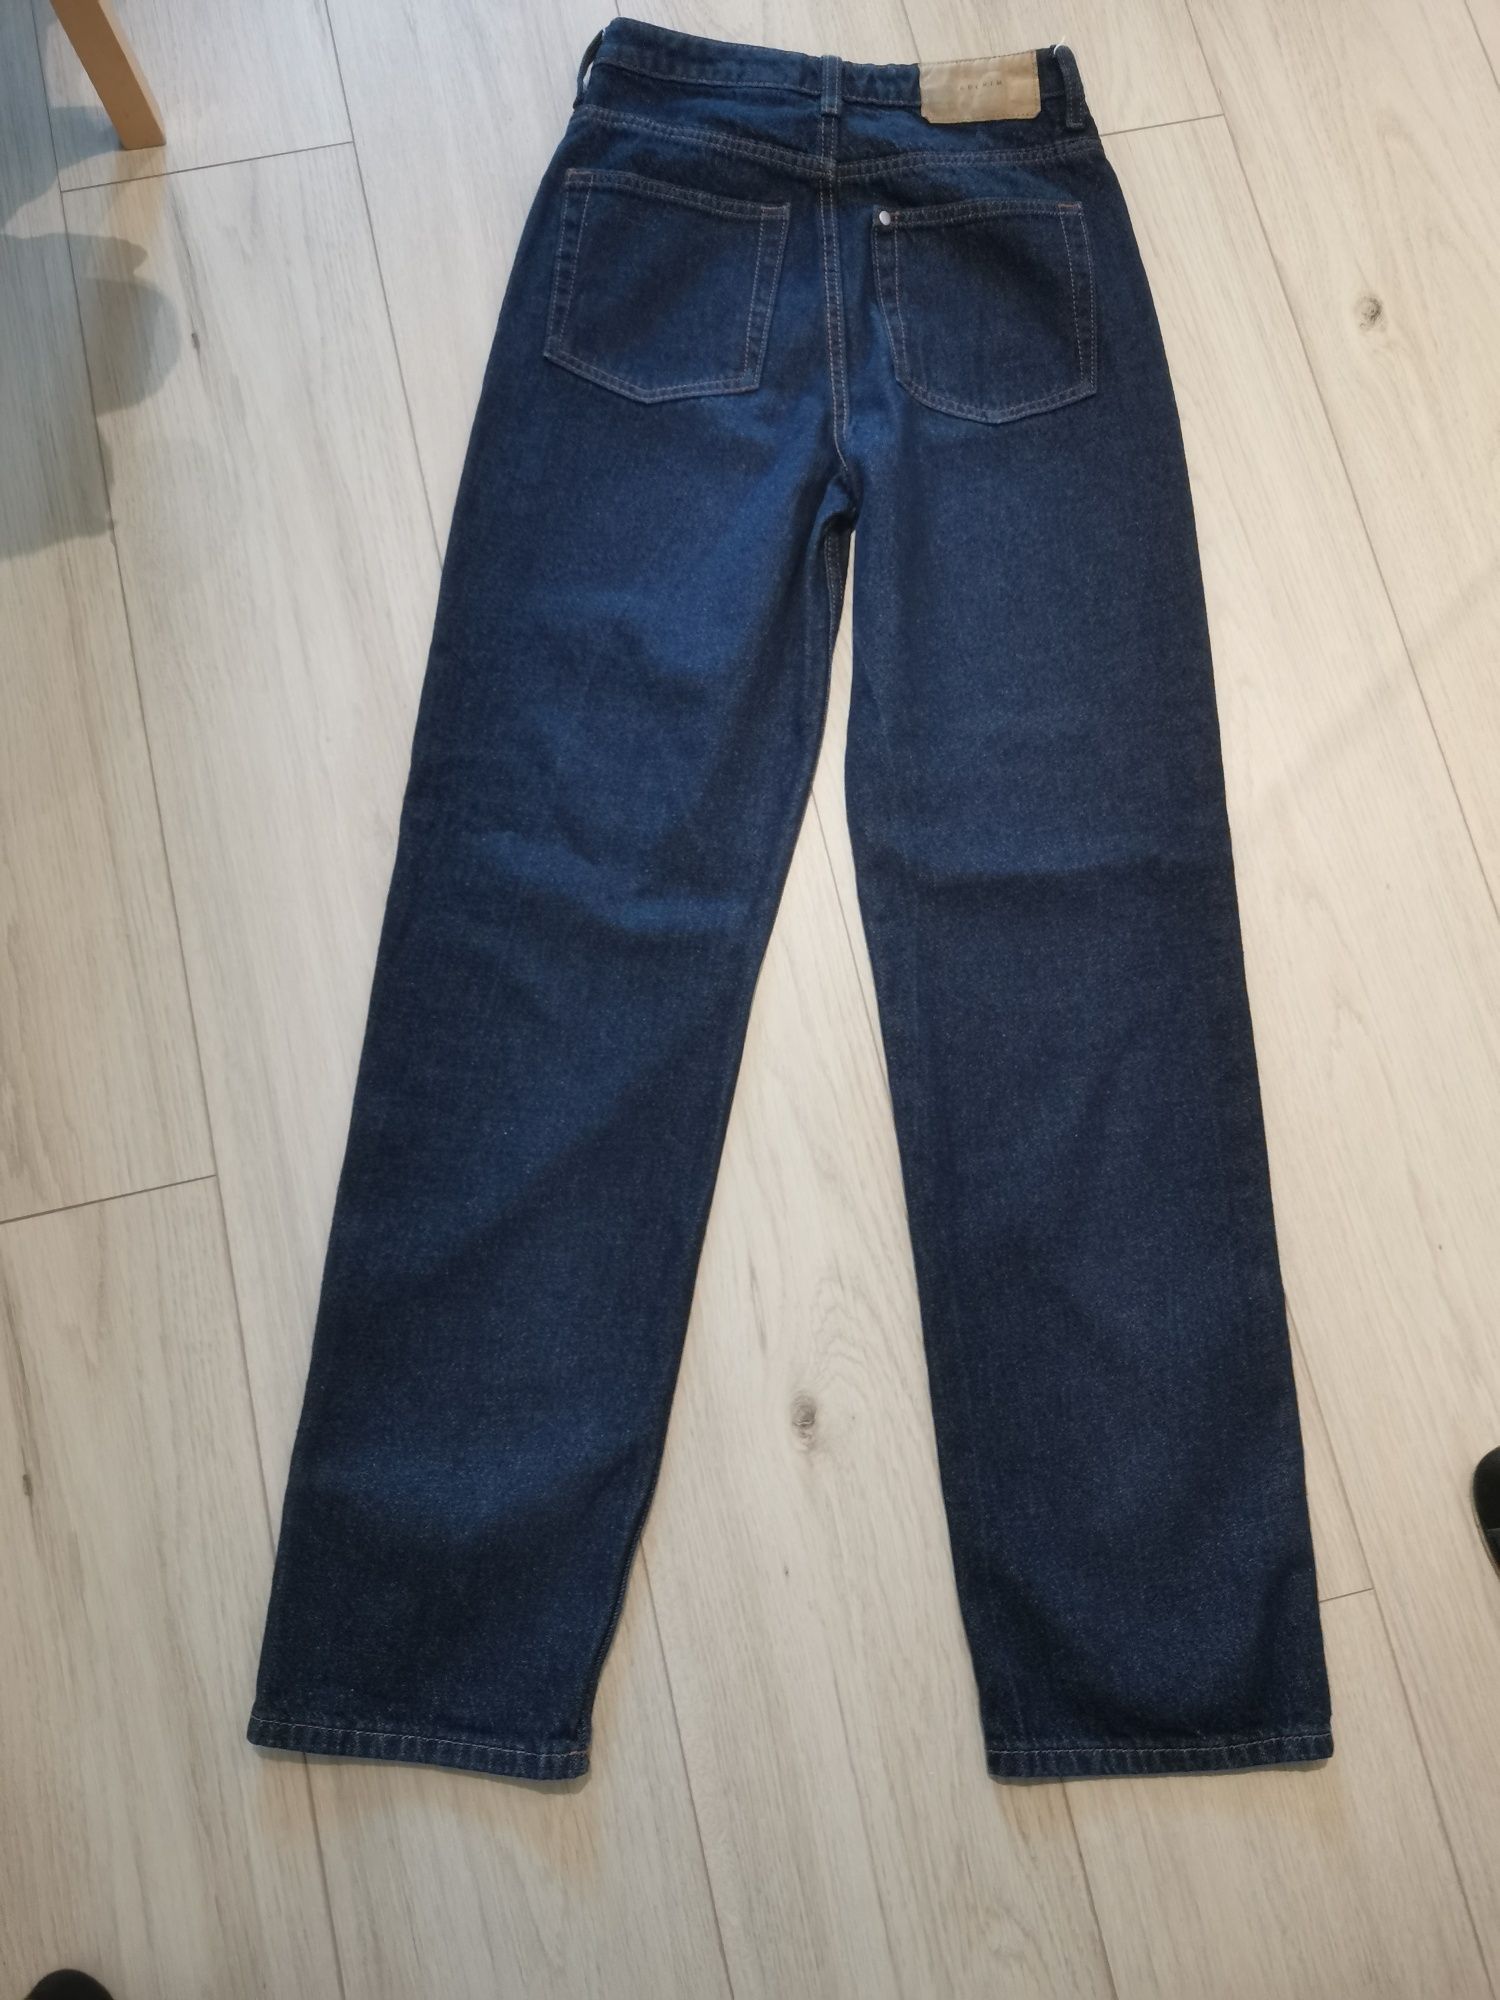 Spodnie damskie jeansowe straight rozmiar 34